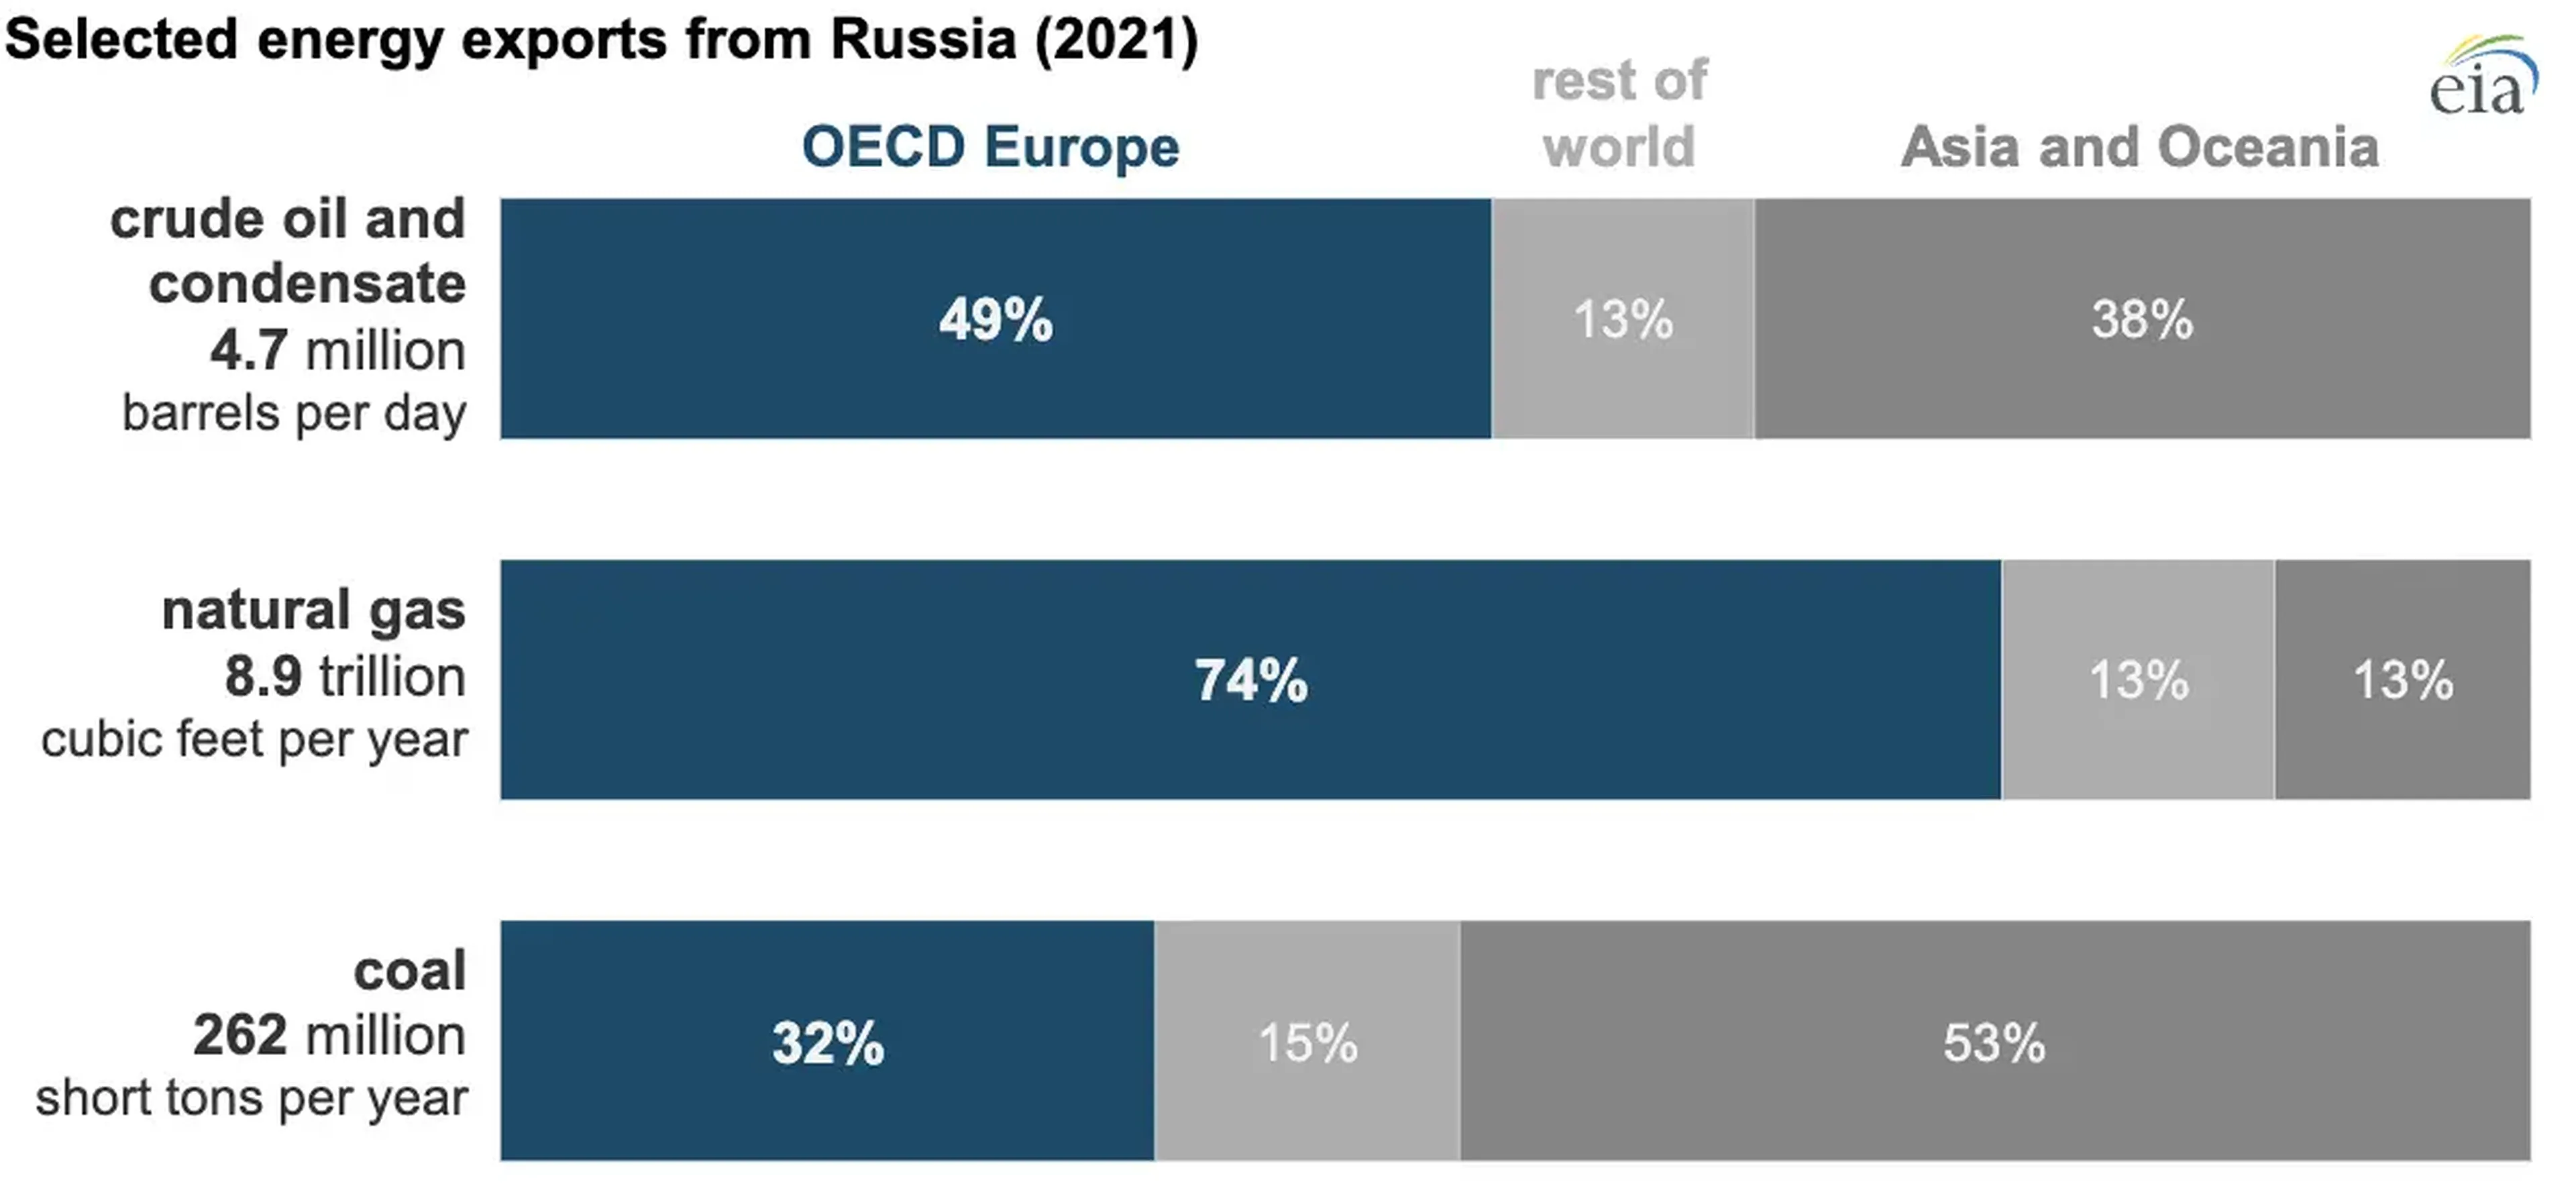 Exportaciones de energía seleccionadas de Rusia